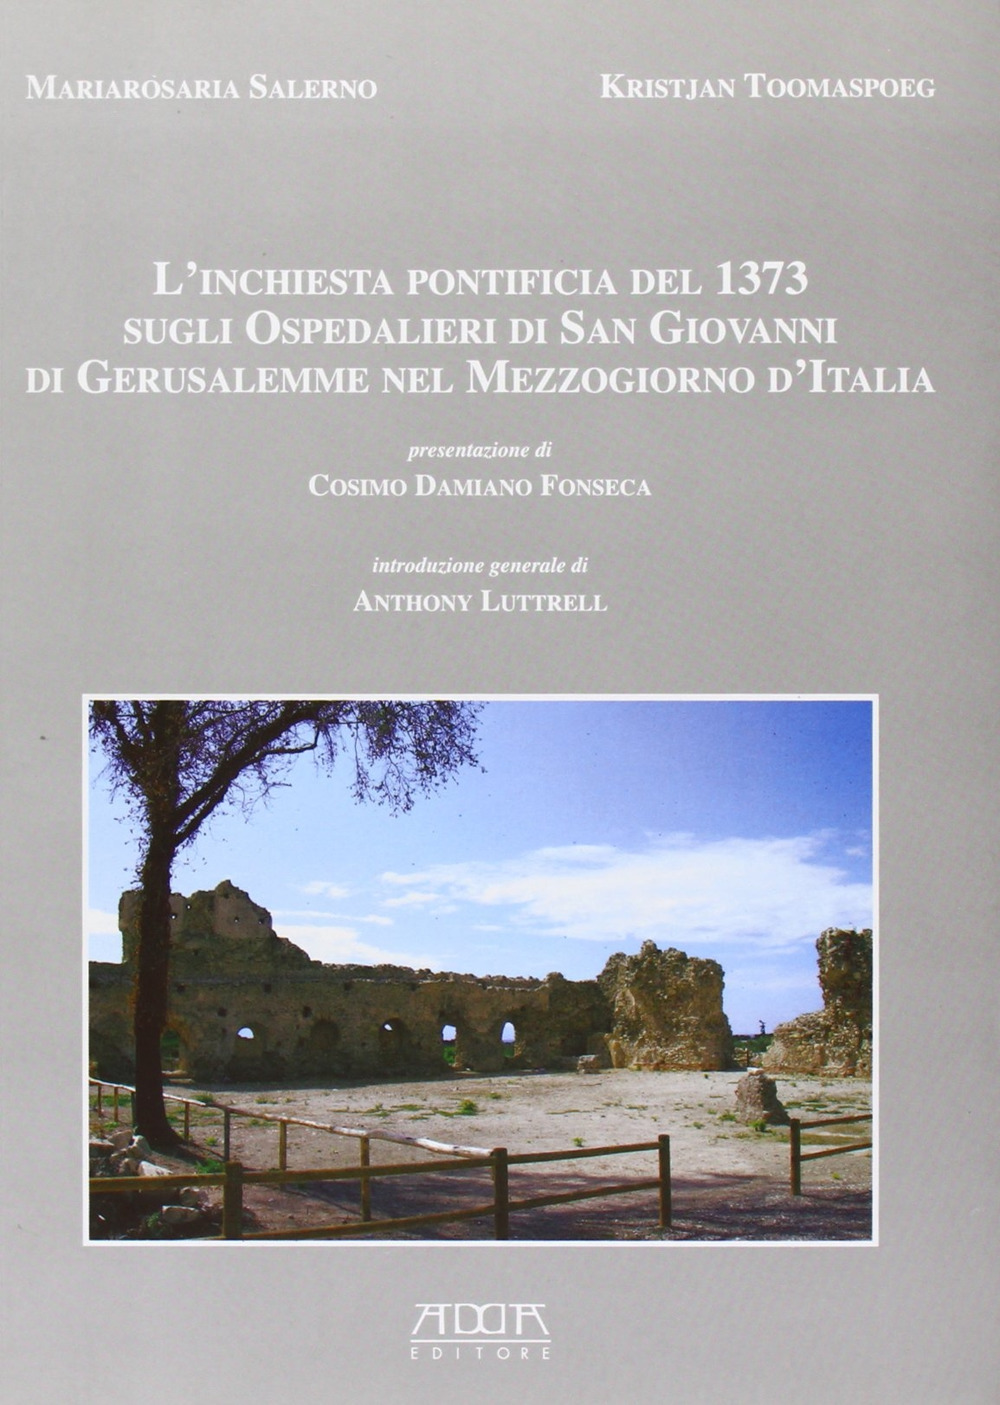 L'inchiesta pontificia del 1373 sugli ospedalieri di San Giovanni di Gerusalemme nel Mezzogiorno d'Italia